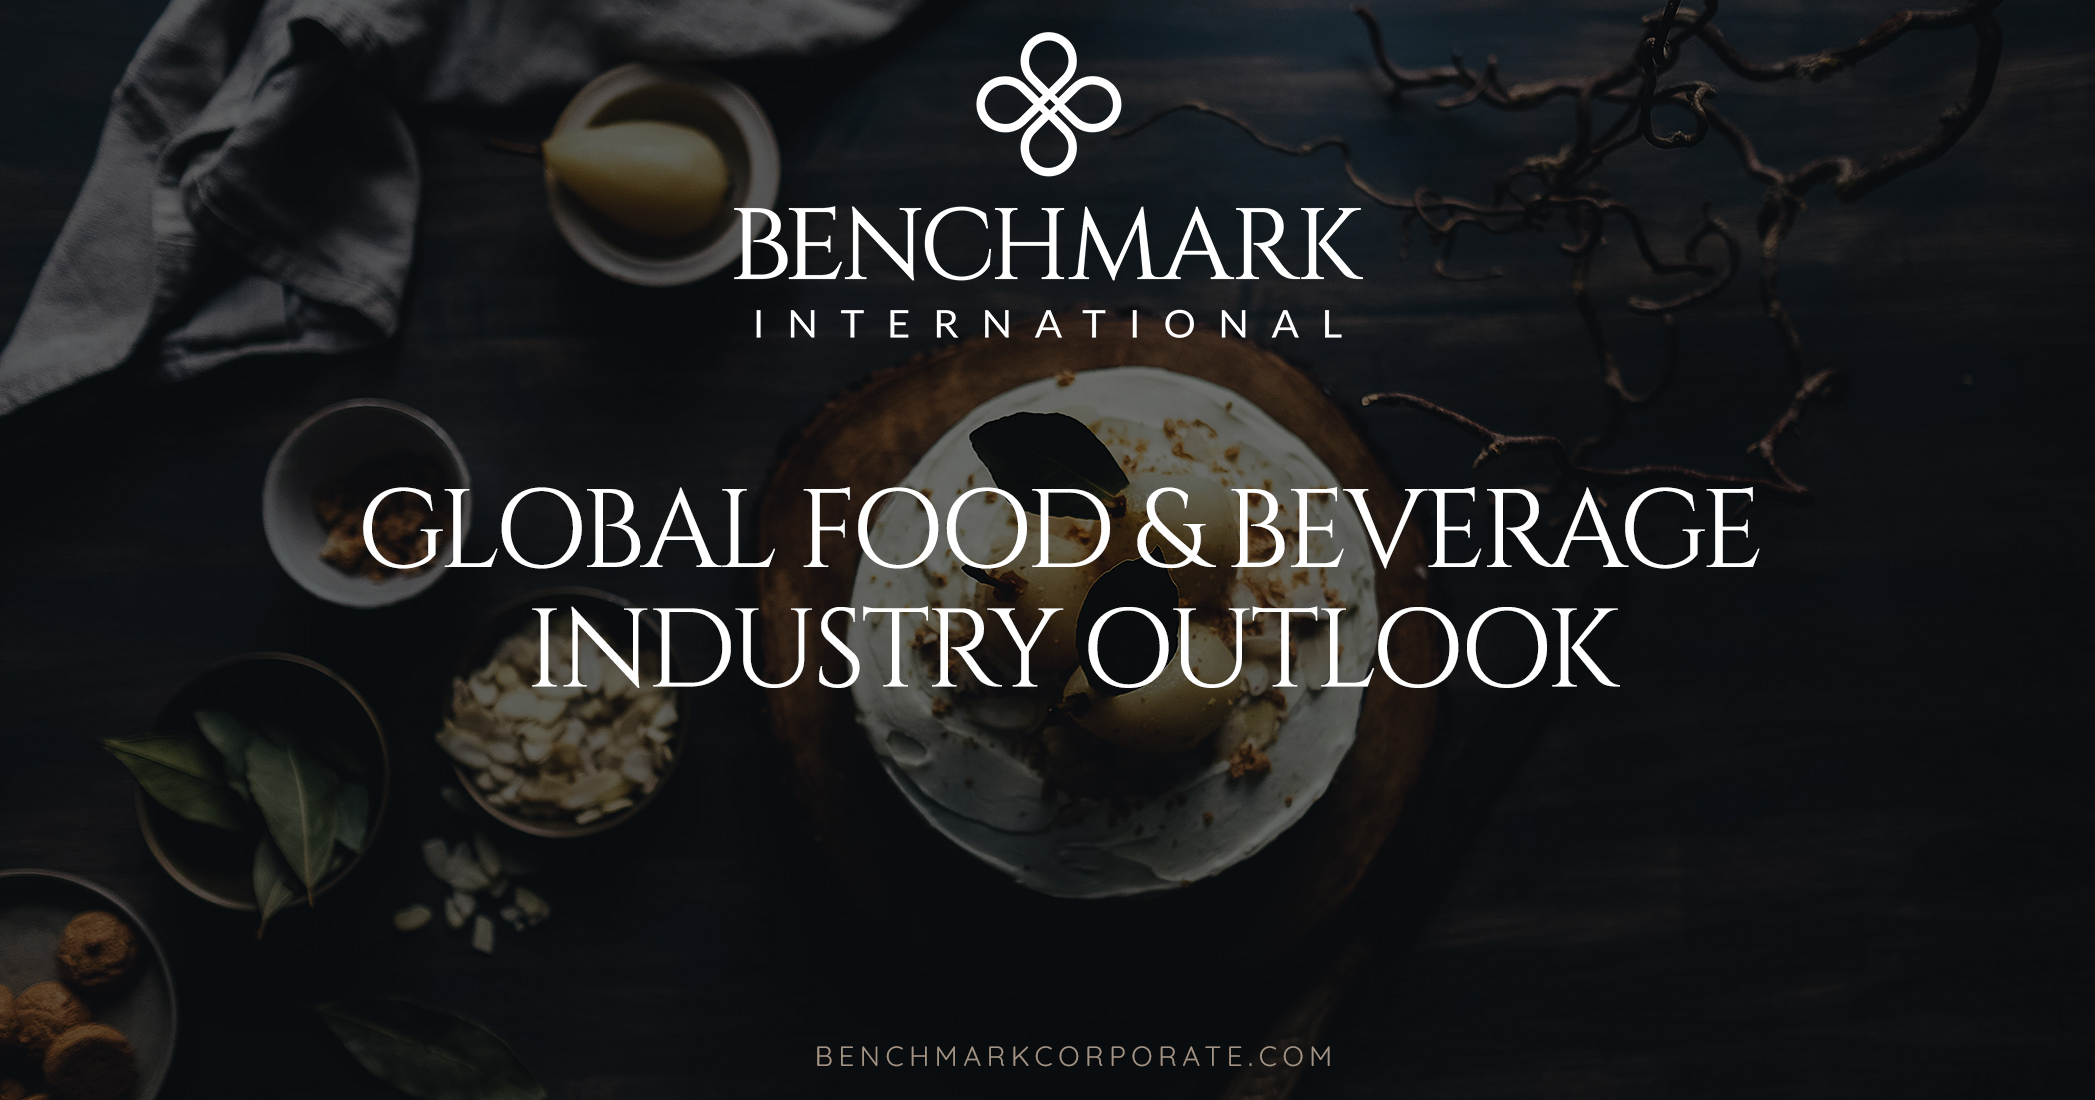 Global Food & Beverage Industry Outlook